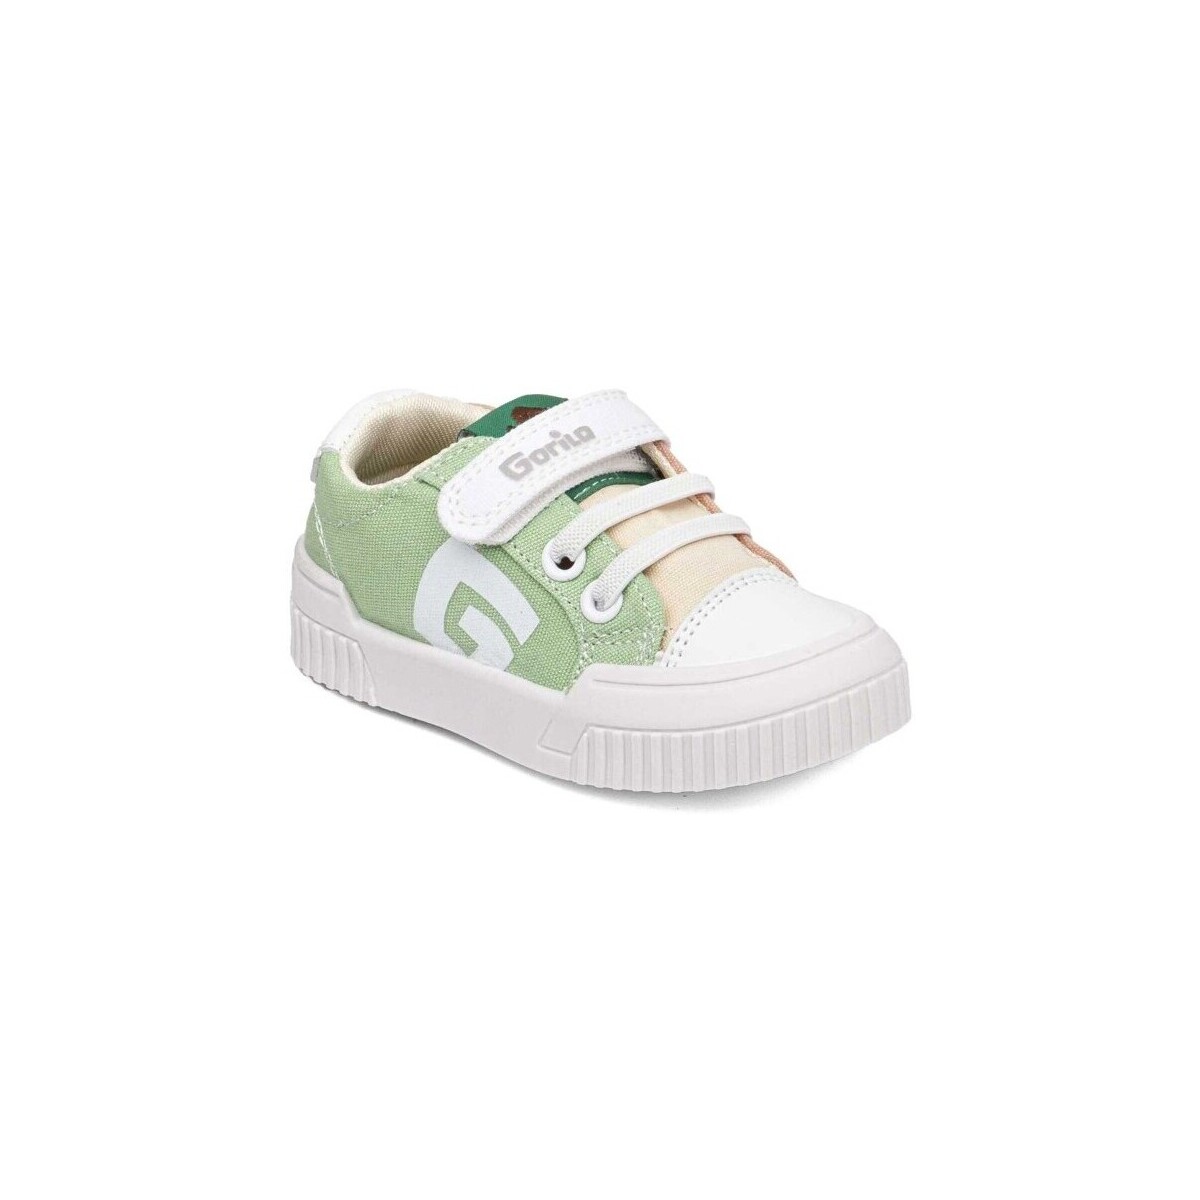 Παπούτσια Sneakers Gorila 28372-18 Multicolour